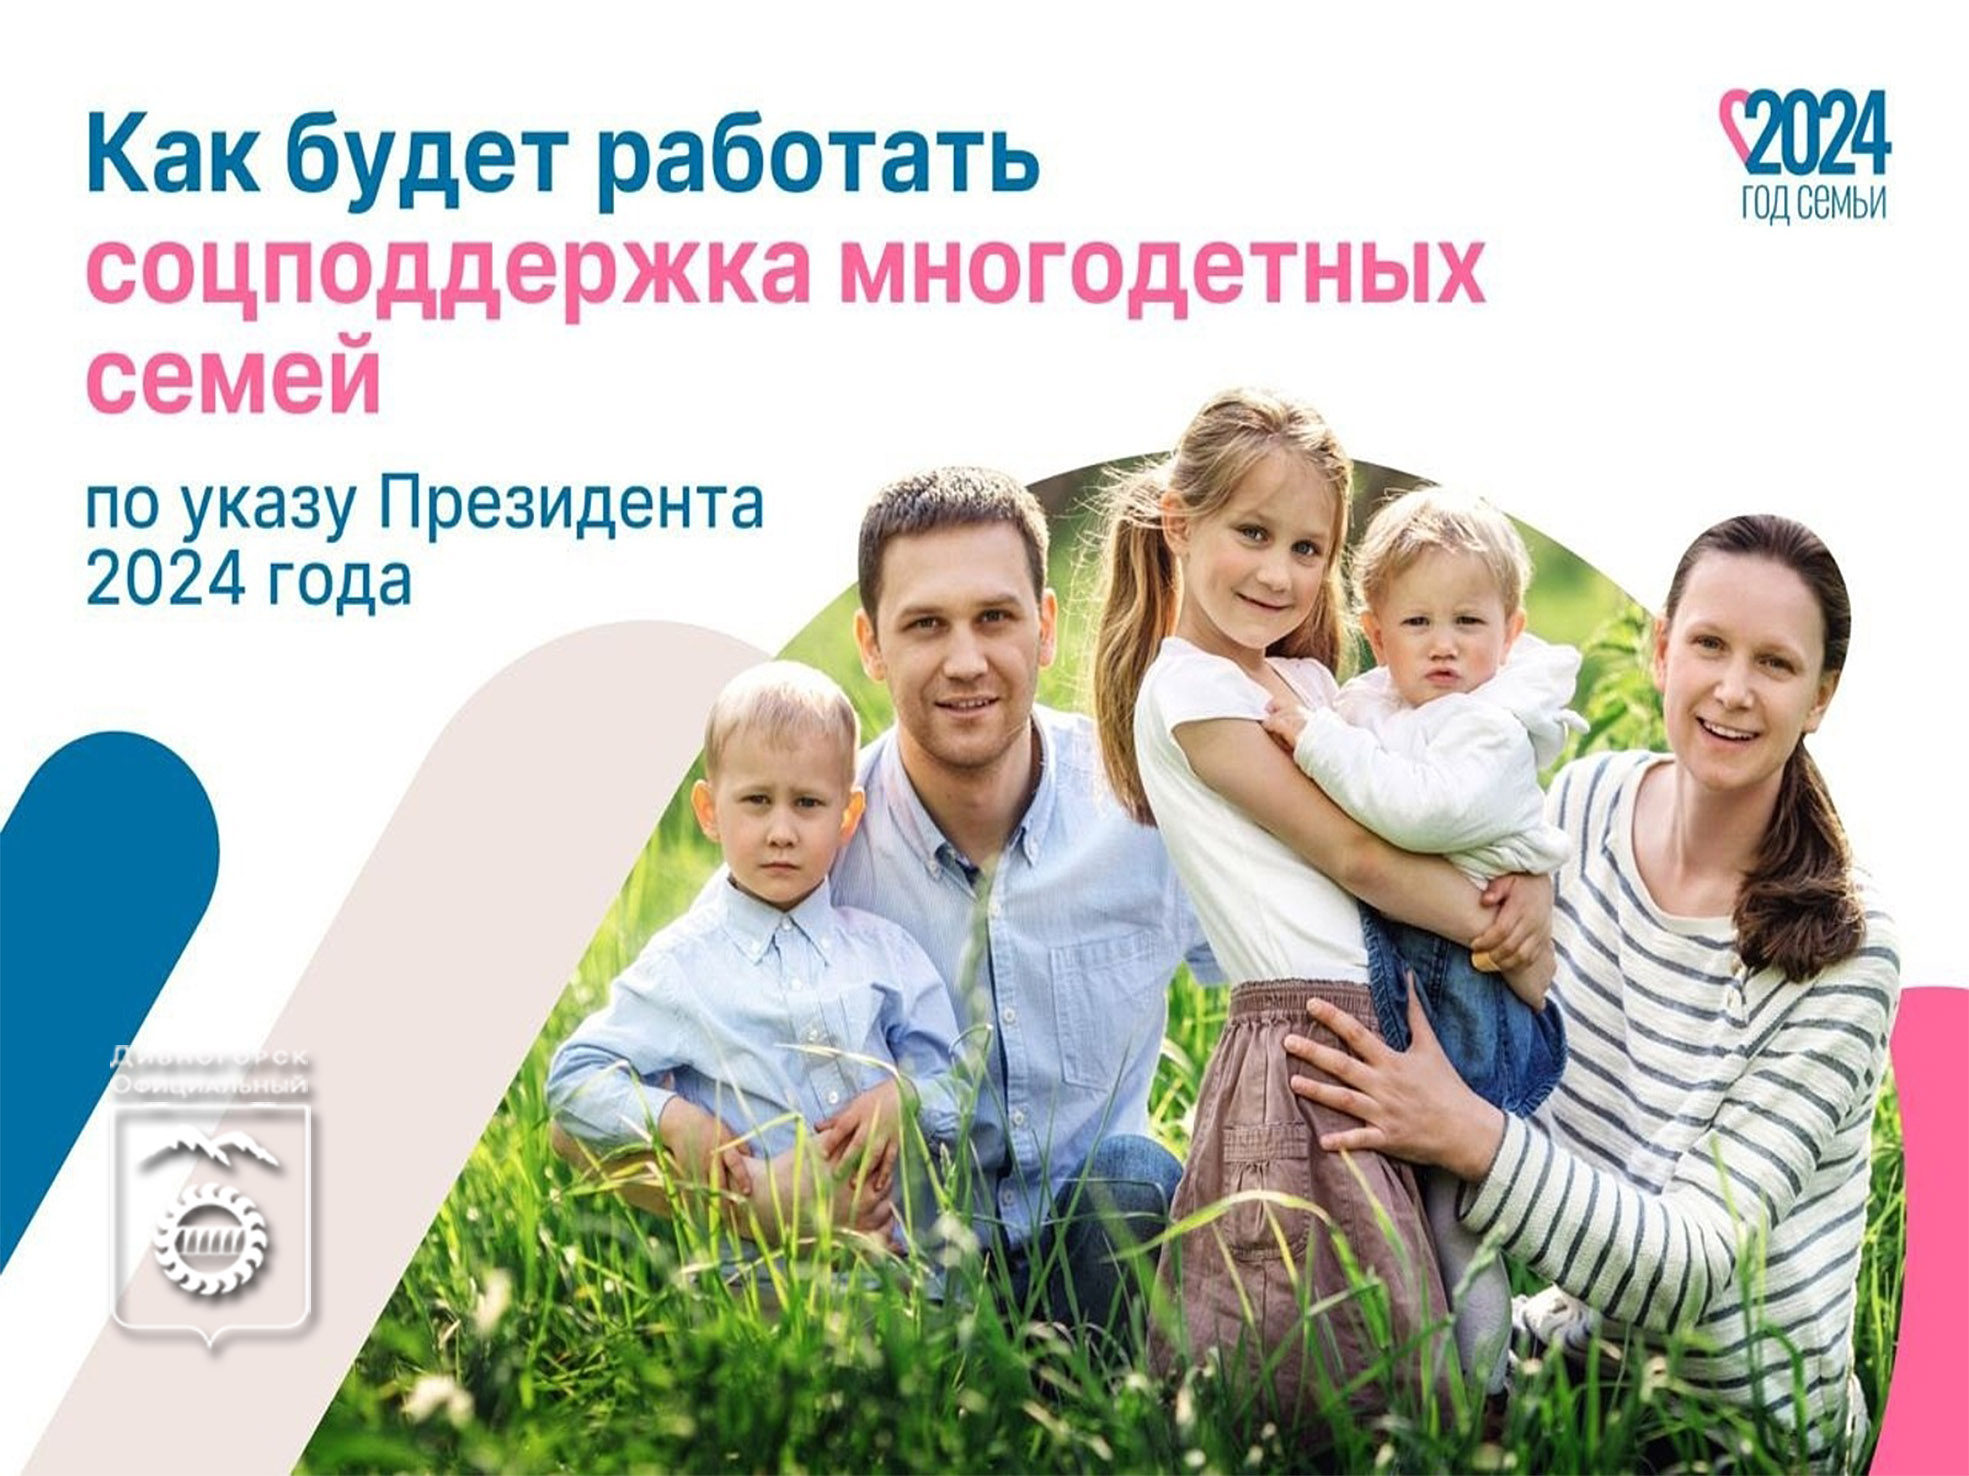 Президент России Владимир Путин подписал указ, закрепляющий статус многодетных семей и определяющий меры поддержки для них.